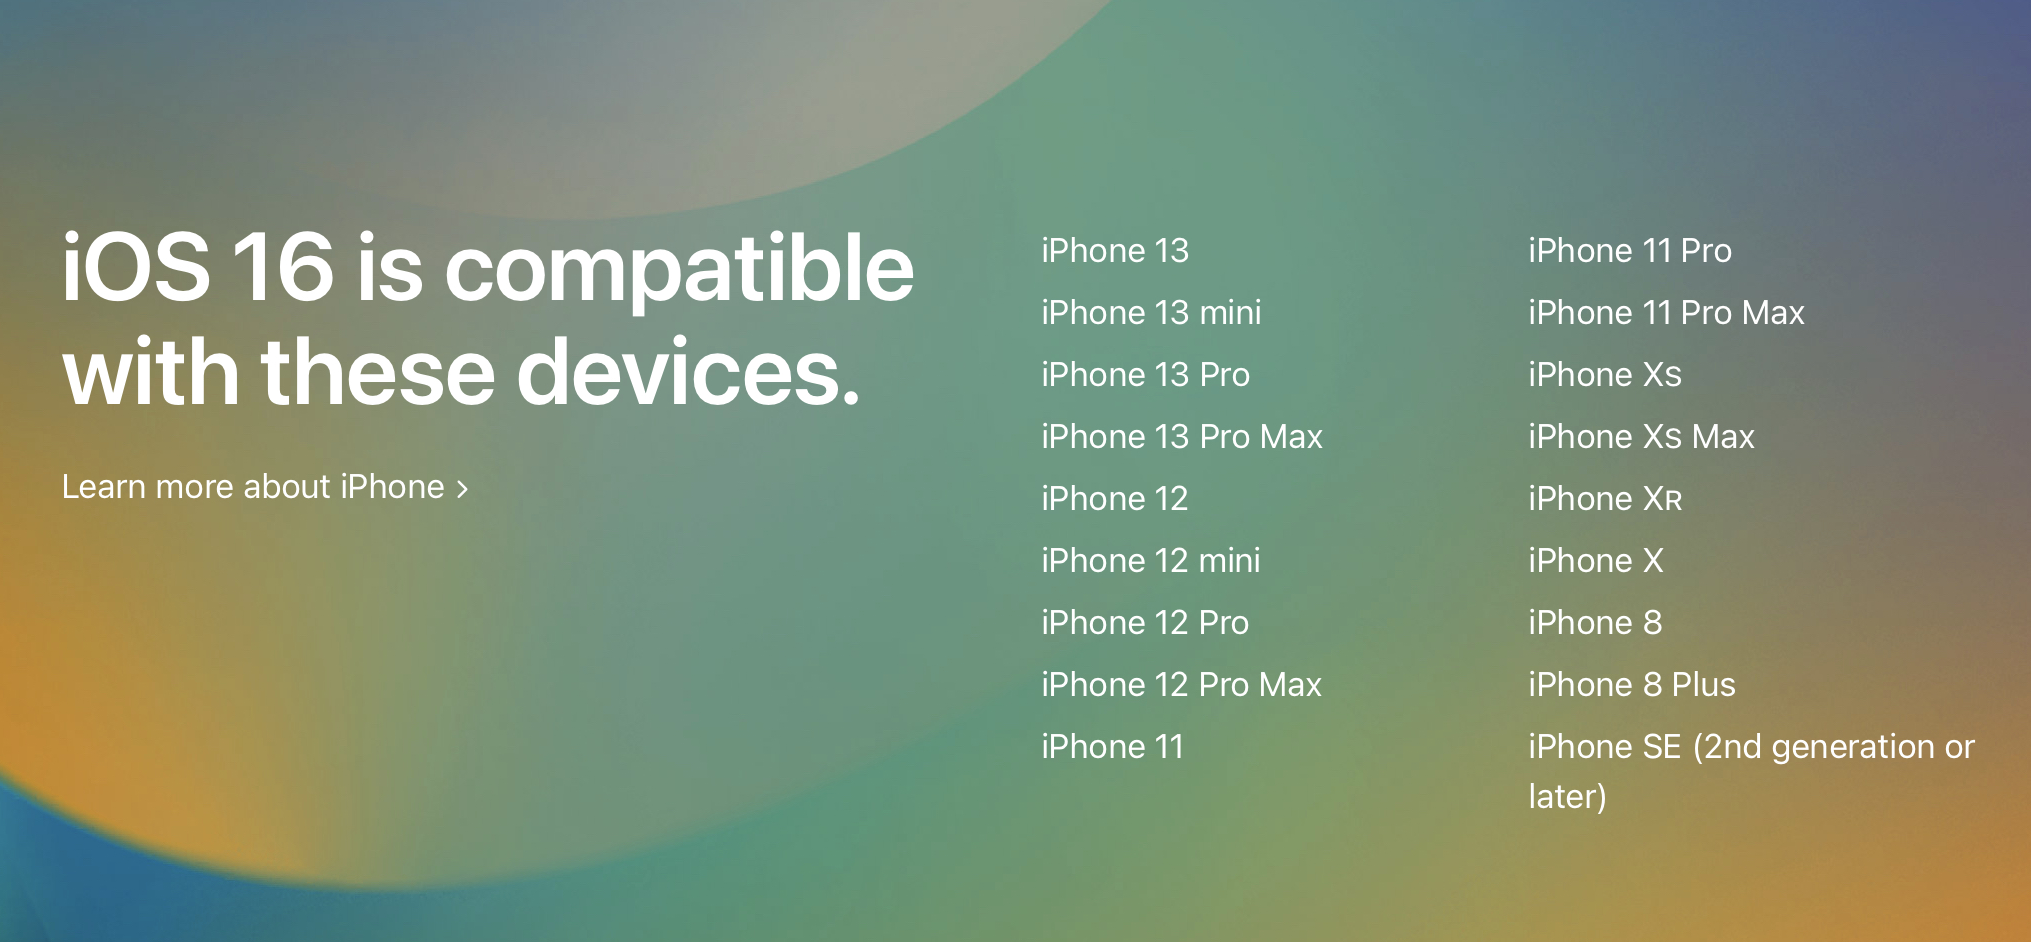 Modelele de iPhone compatibile cu iOS 16